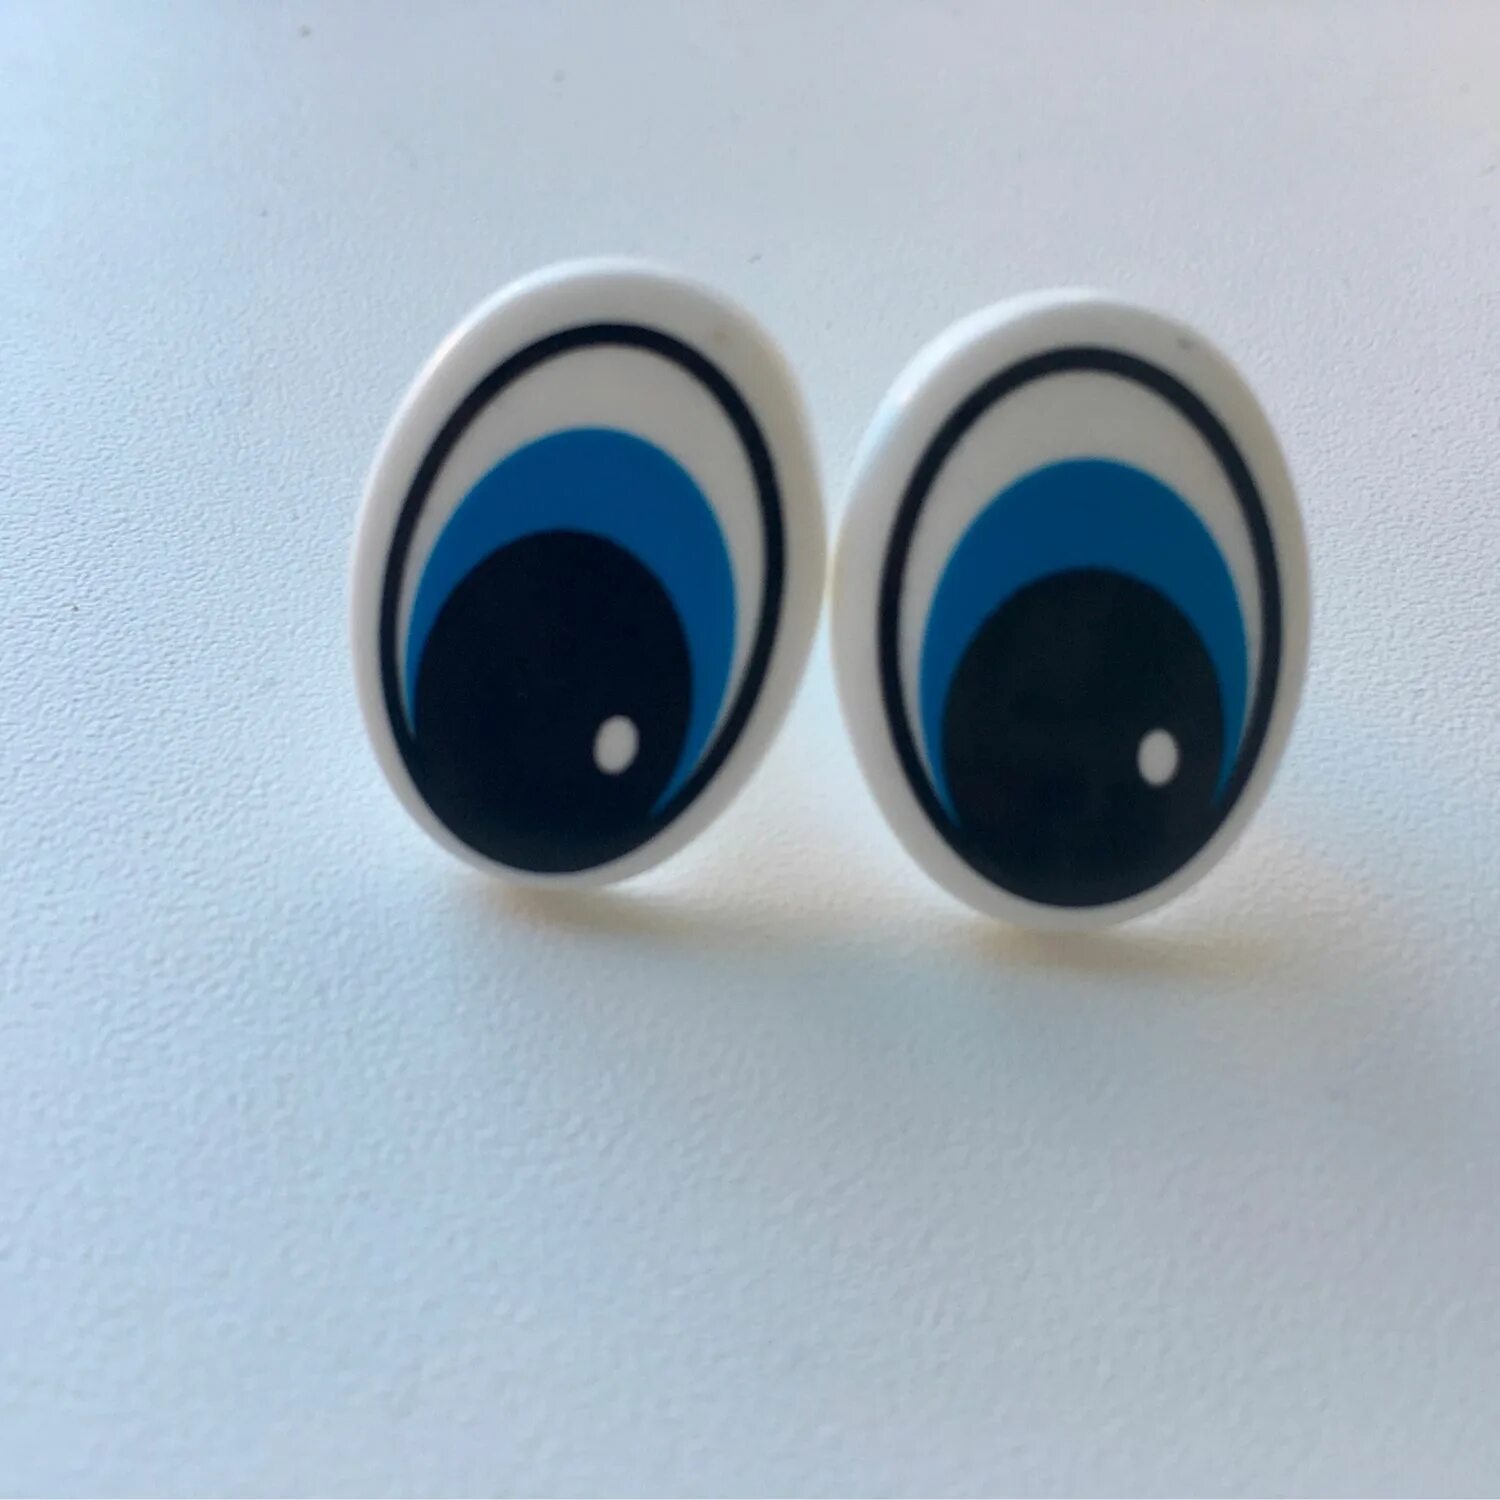 Винт глазок. Глазки винтовые 5 мм. Глаза винтовые голубые. Глазки винтовые для игрушек с ресницами. Глазки купить спб